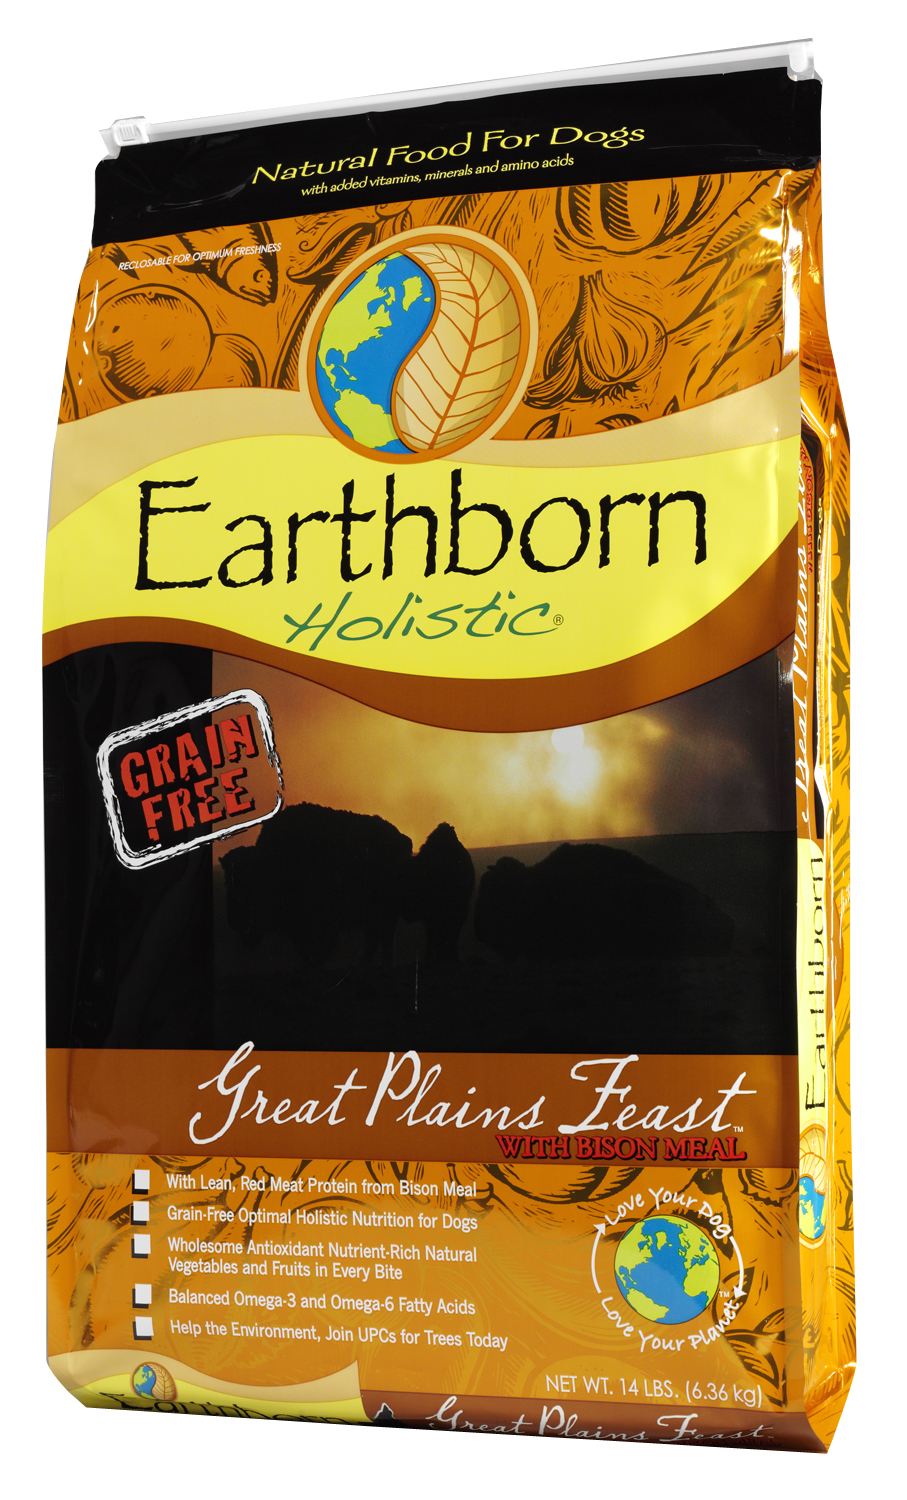 Earthborn Holistic Great Plains Feast, 12.5 lbs